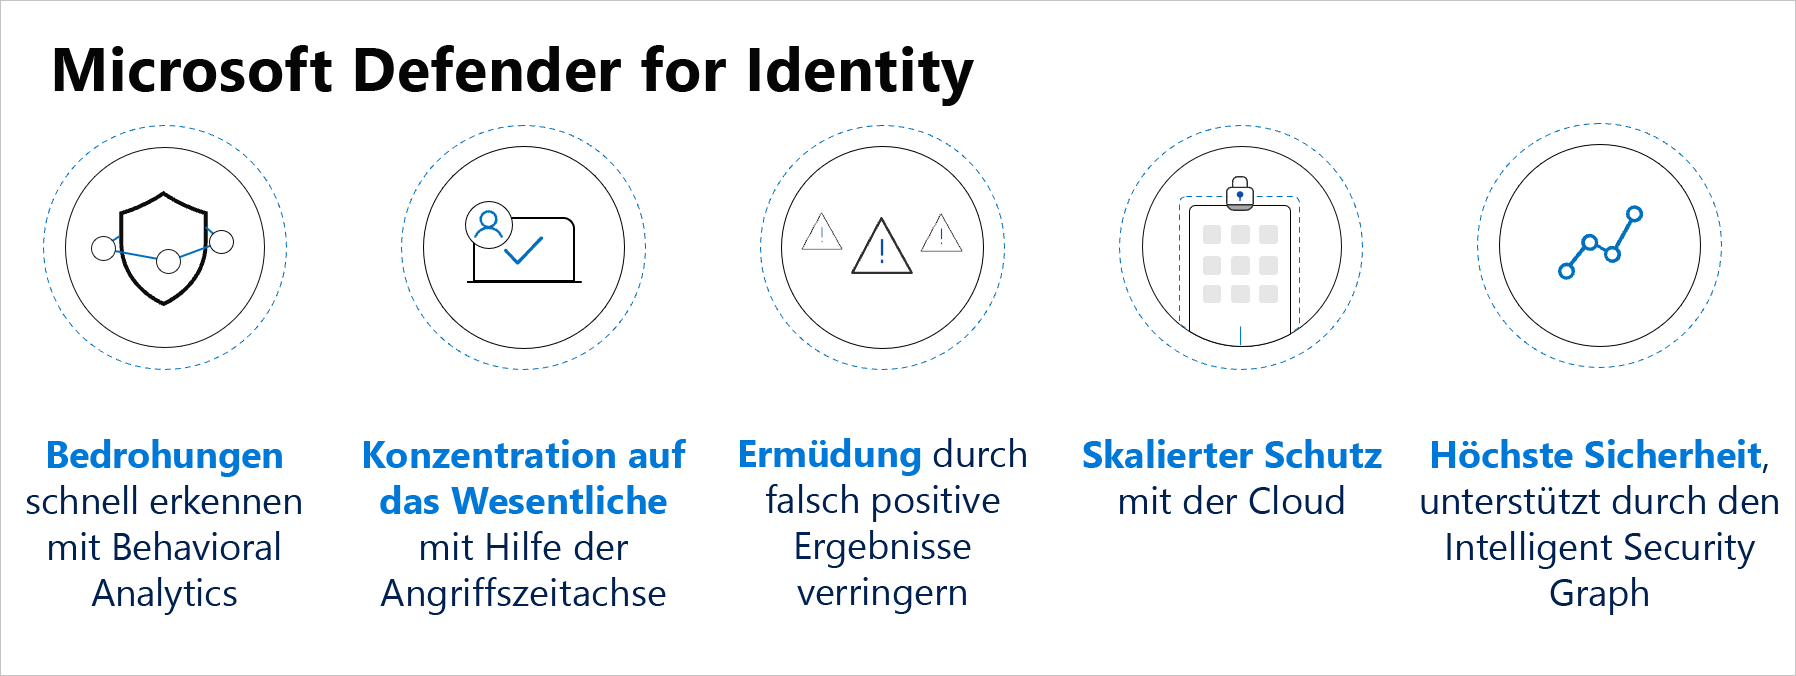 Die Vorteile von Microsoft Defender for Identity.